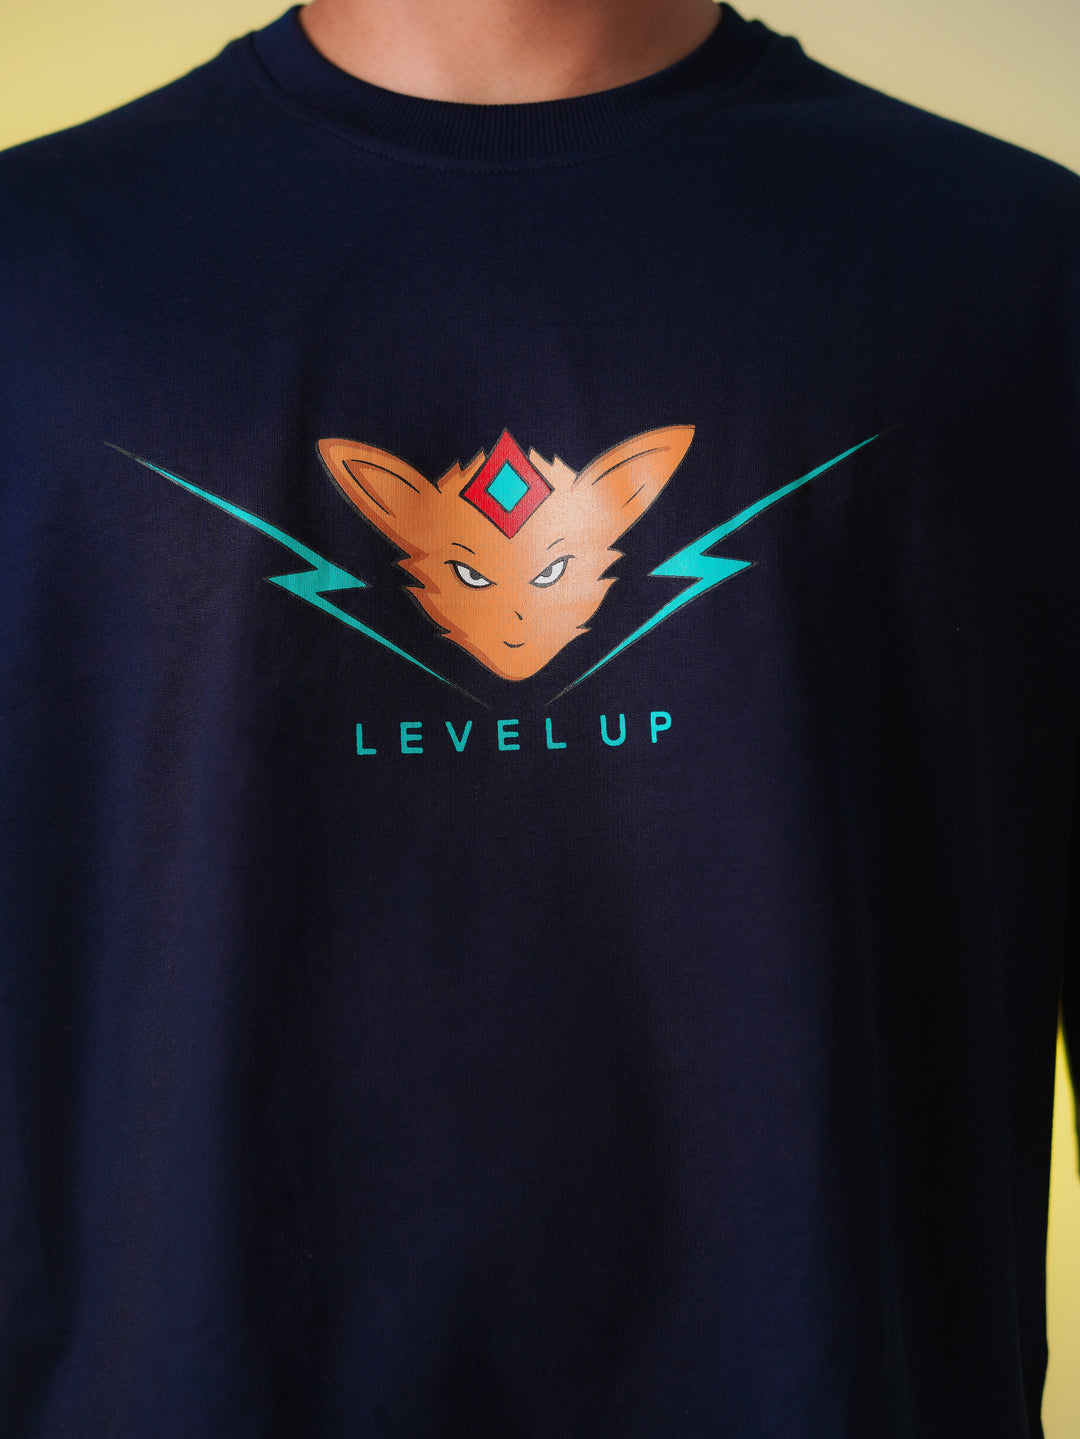 Level Up! - Oversized T-shirt Women